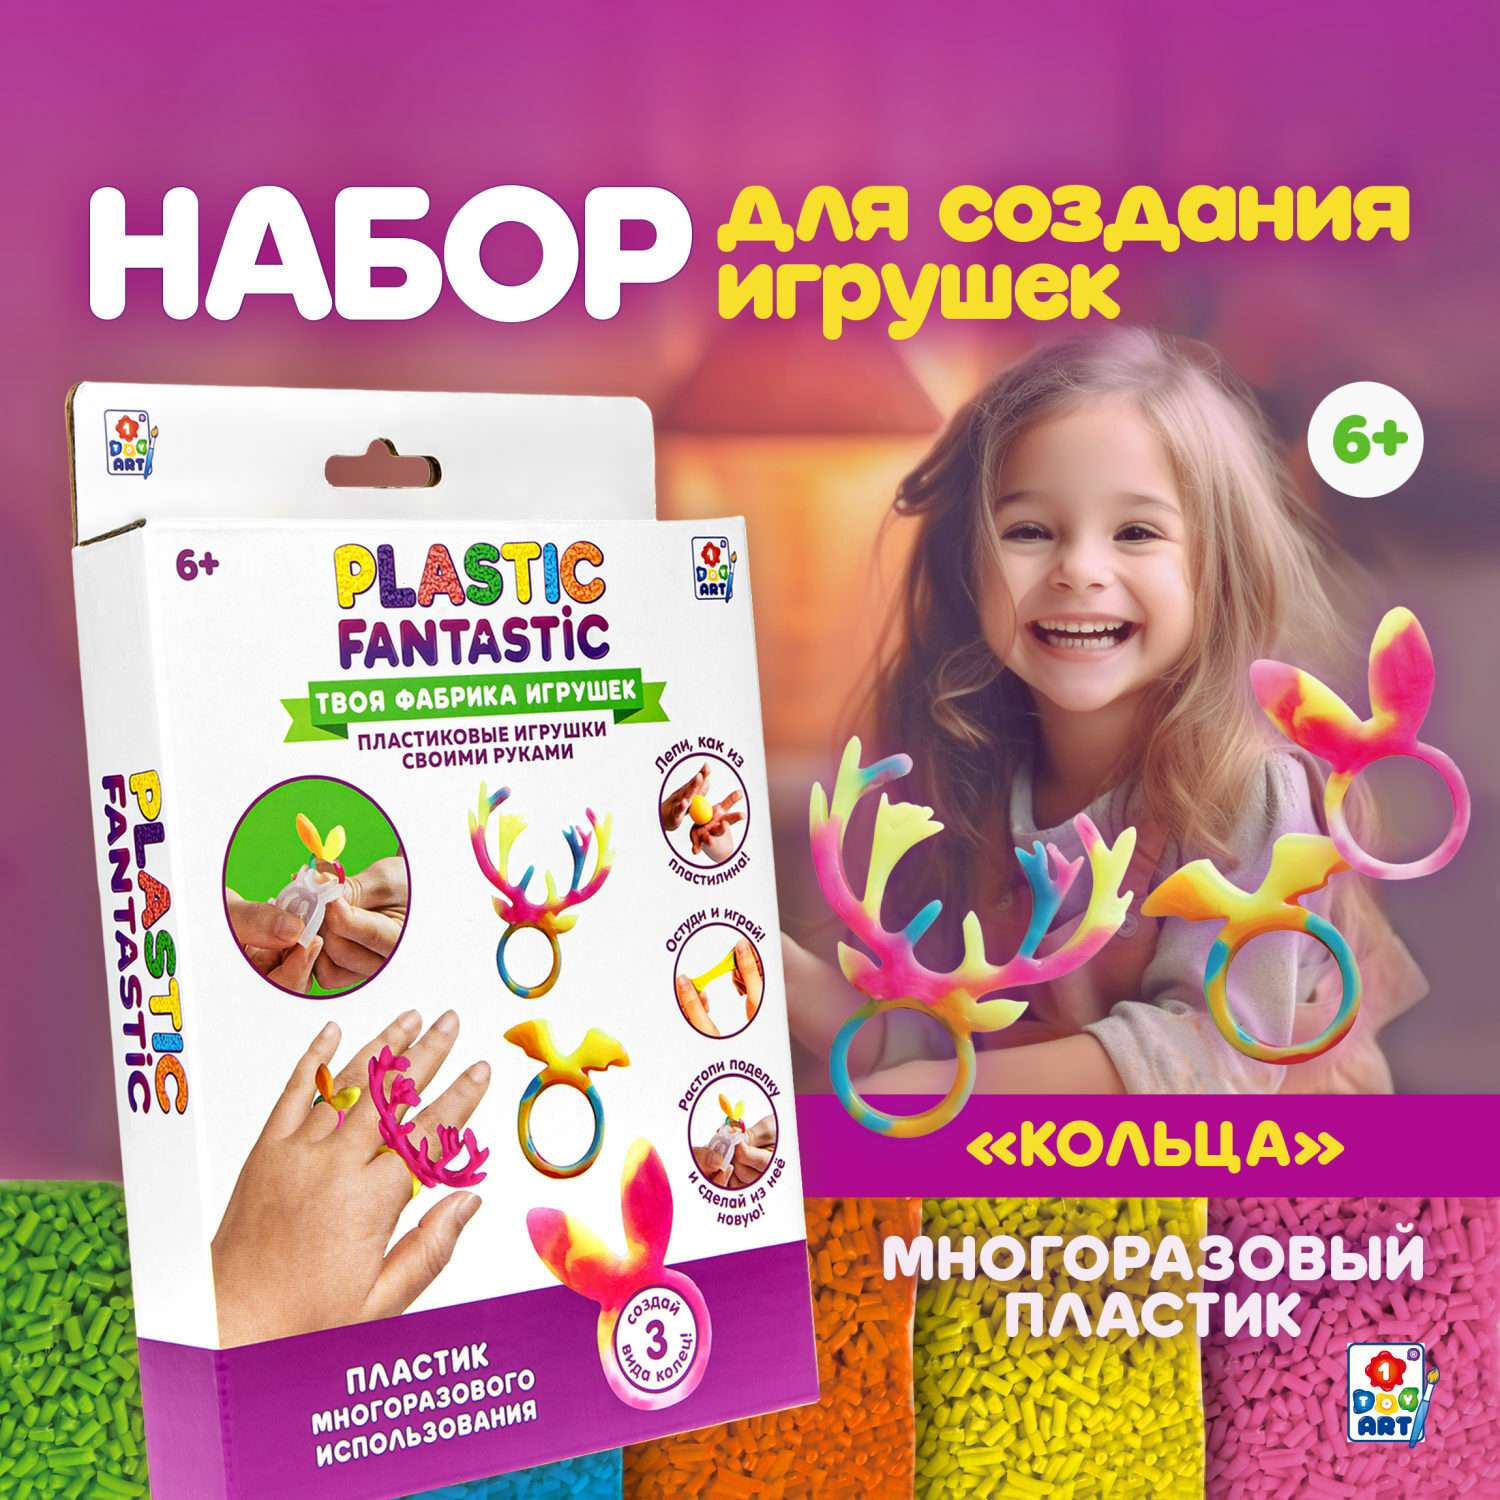 Посмотрите, какие игрушки предлагает наш интернет-магазин в СПб